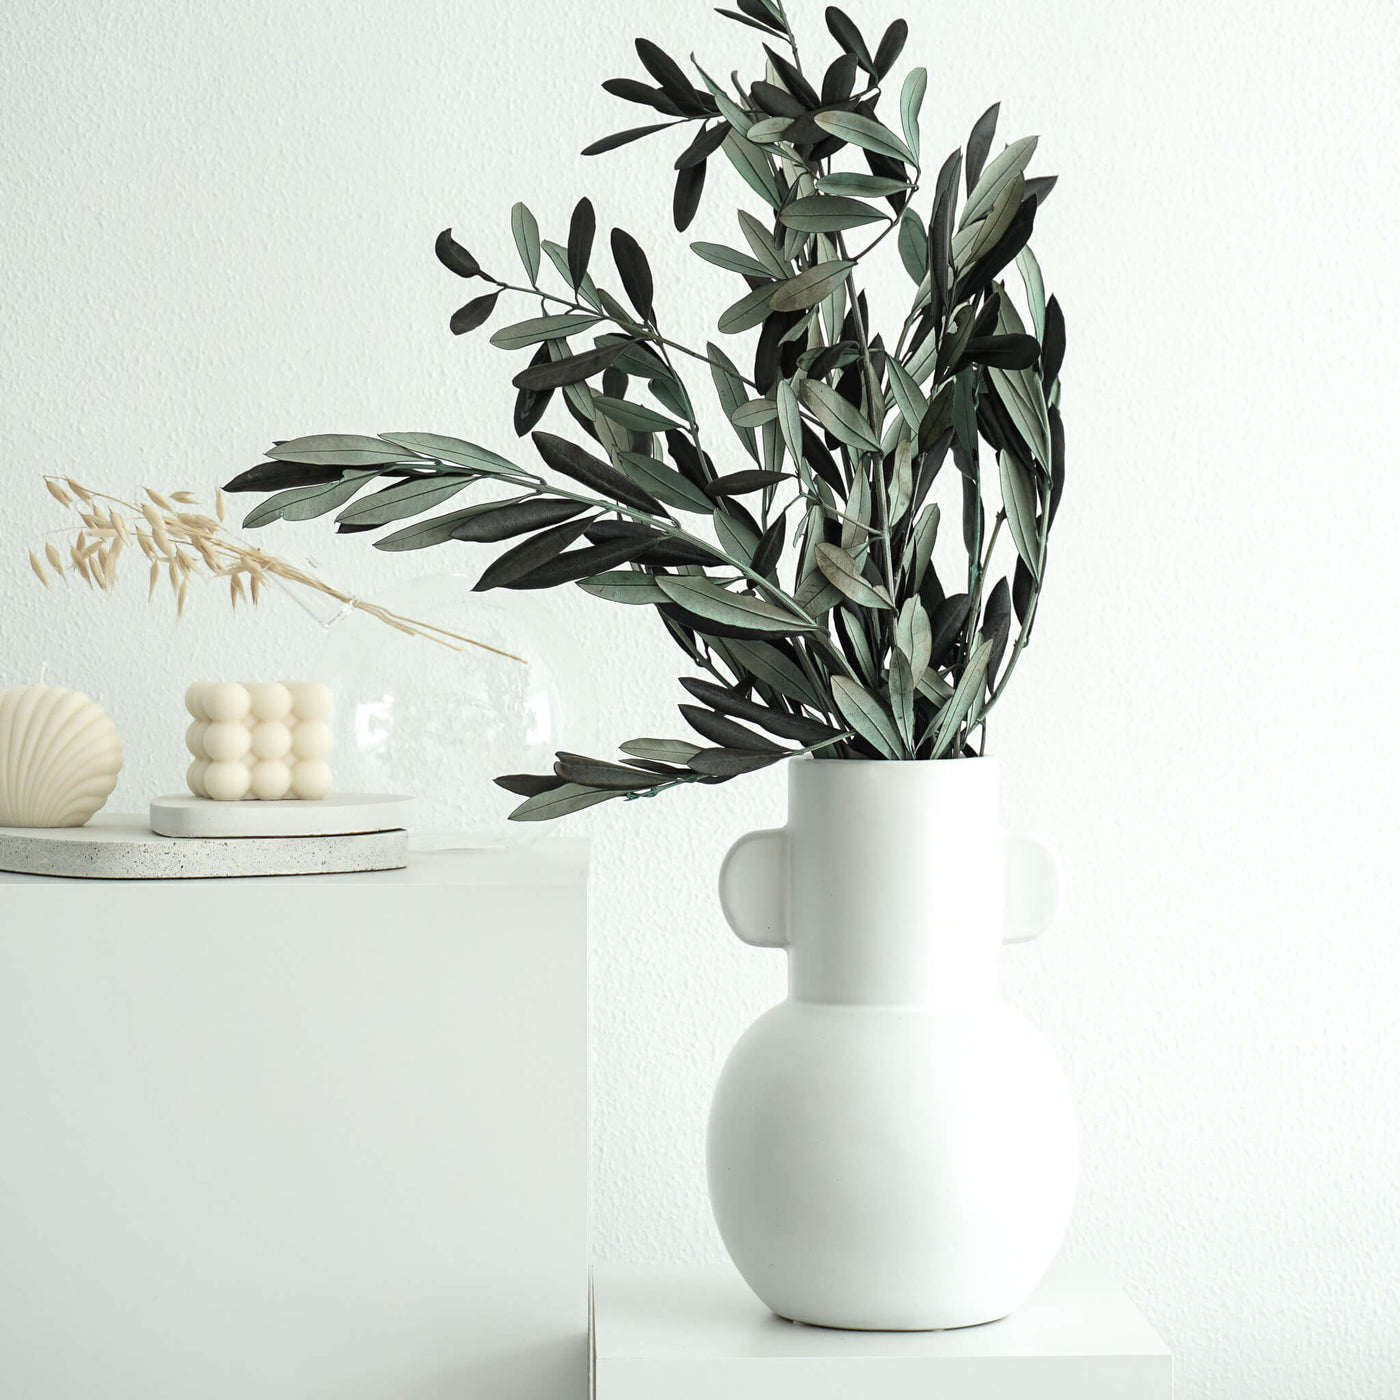 Olivenzweige grün | 60-70 cm | 1 großer Bund | aus Italien | konserviert - Größe: klein (1-2 Stiele), groß (1 Bund)